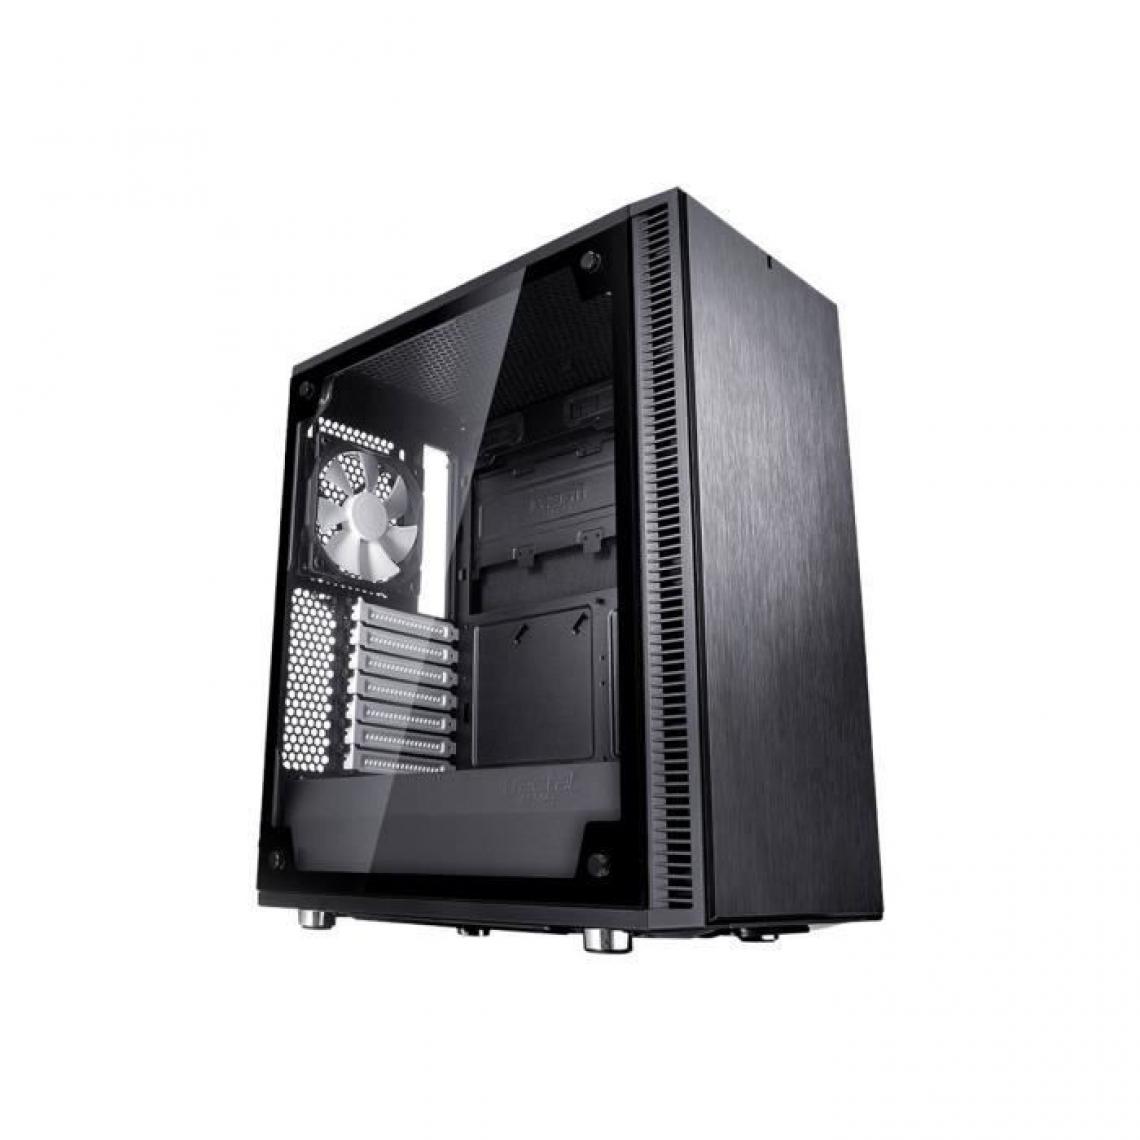 Fractal Design - FRACTAL DESIGN BOITIER PC Define C - Noir - Verre trempé - Format ATX (FD-CA-DEF-C-BK-TG) - Boitier PC